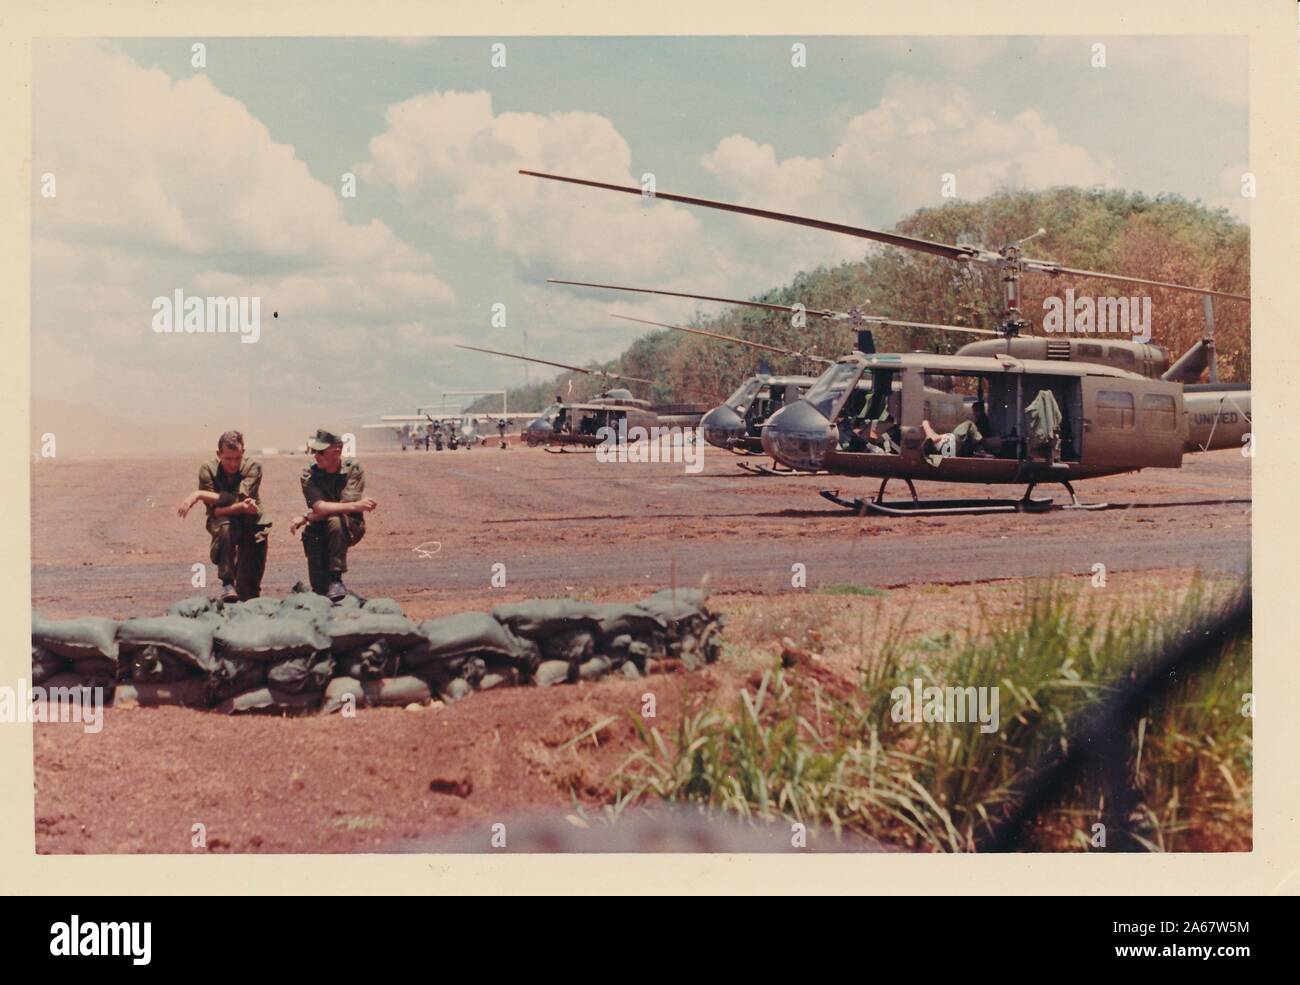 Zwei amerikanische Soldaten sprechen und ruhen in der Nähe eines Foxholes mit Sandsäcken, mit einer Reihe von Hubschraubern vom Typ Bell Uh-1 Iroquois (Huey) warten im Hintergrund, in Vietnam während des Vietnamkriegs 1975. () Stockfoto